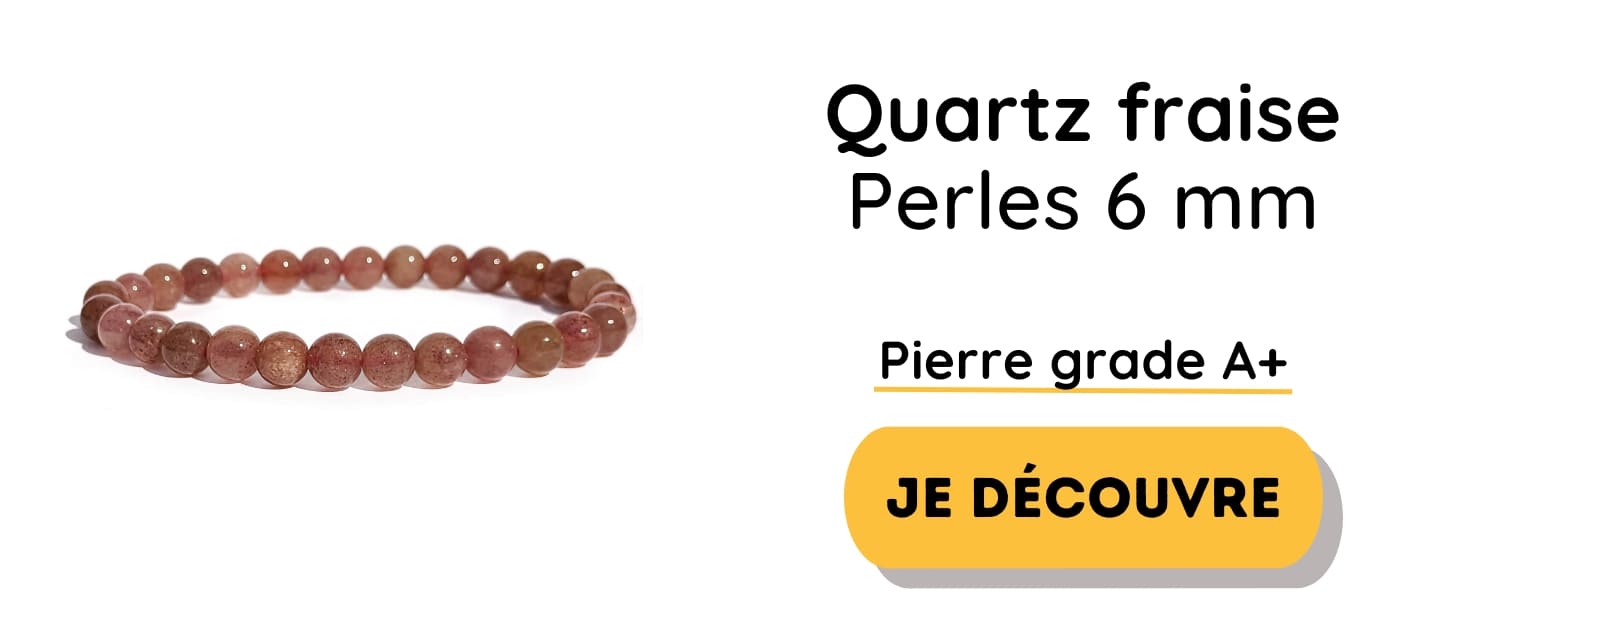 Bracelet de quartz fraise en perles 6mm